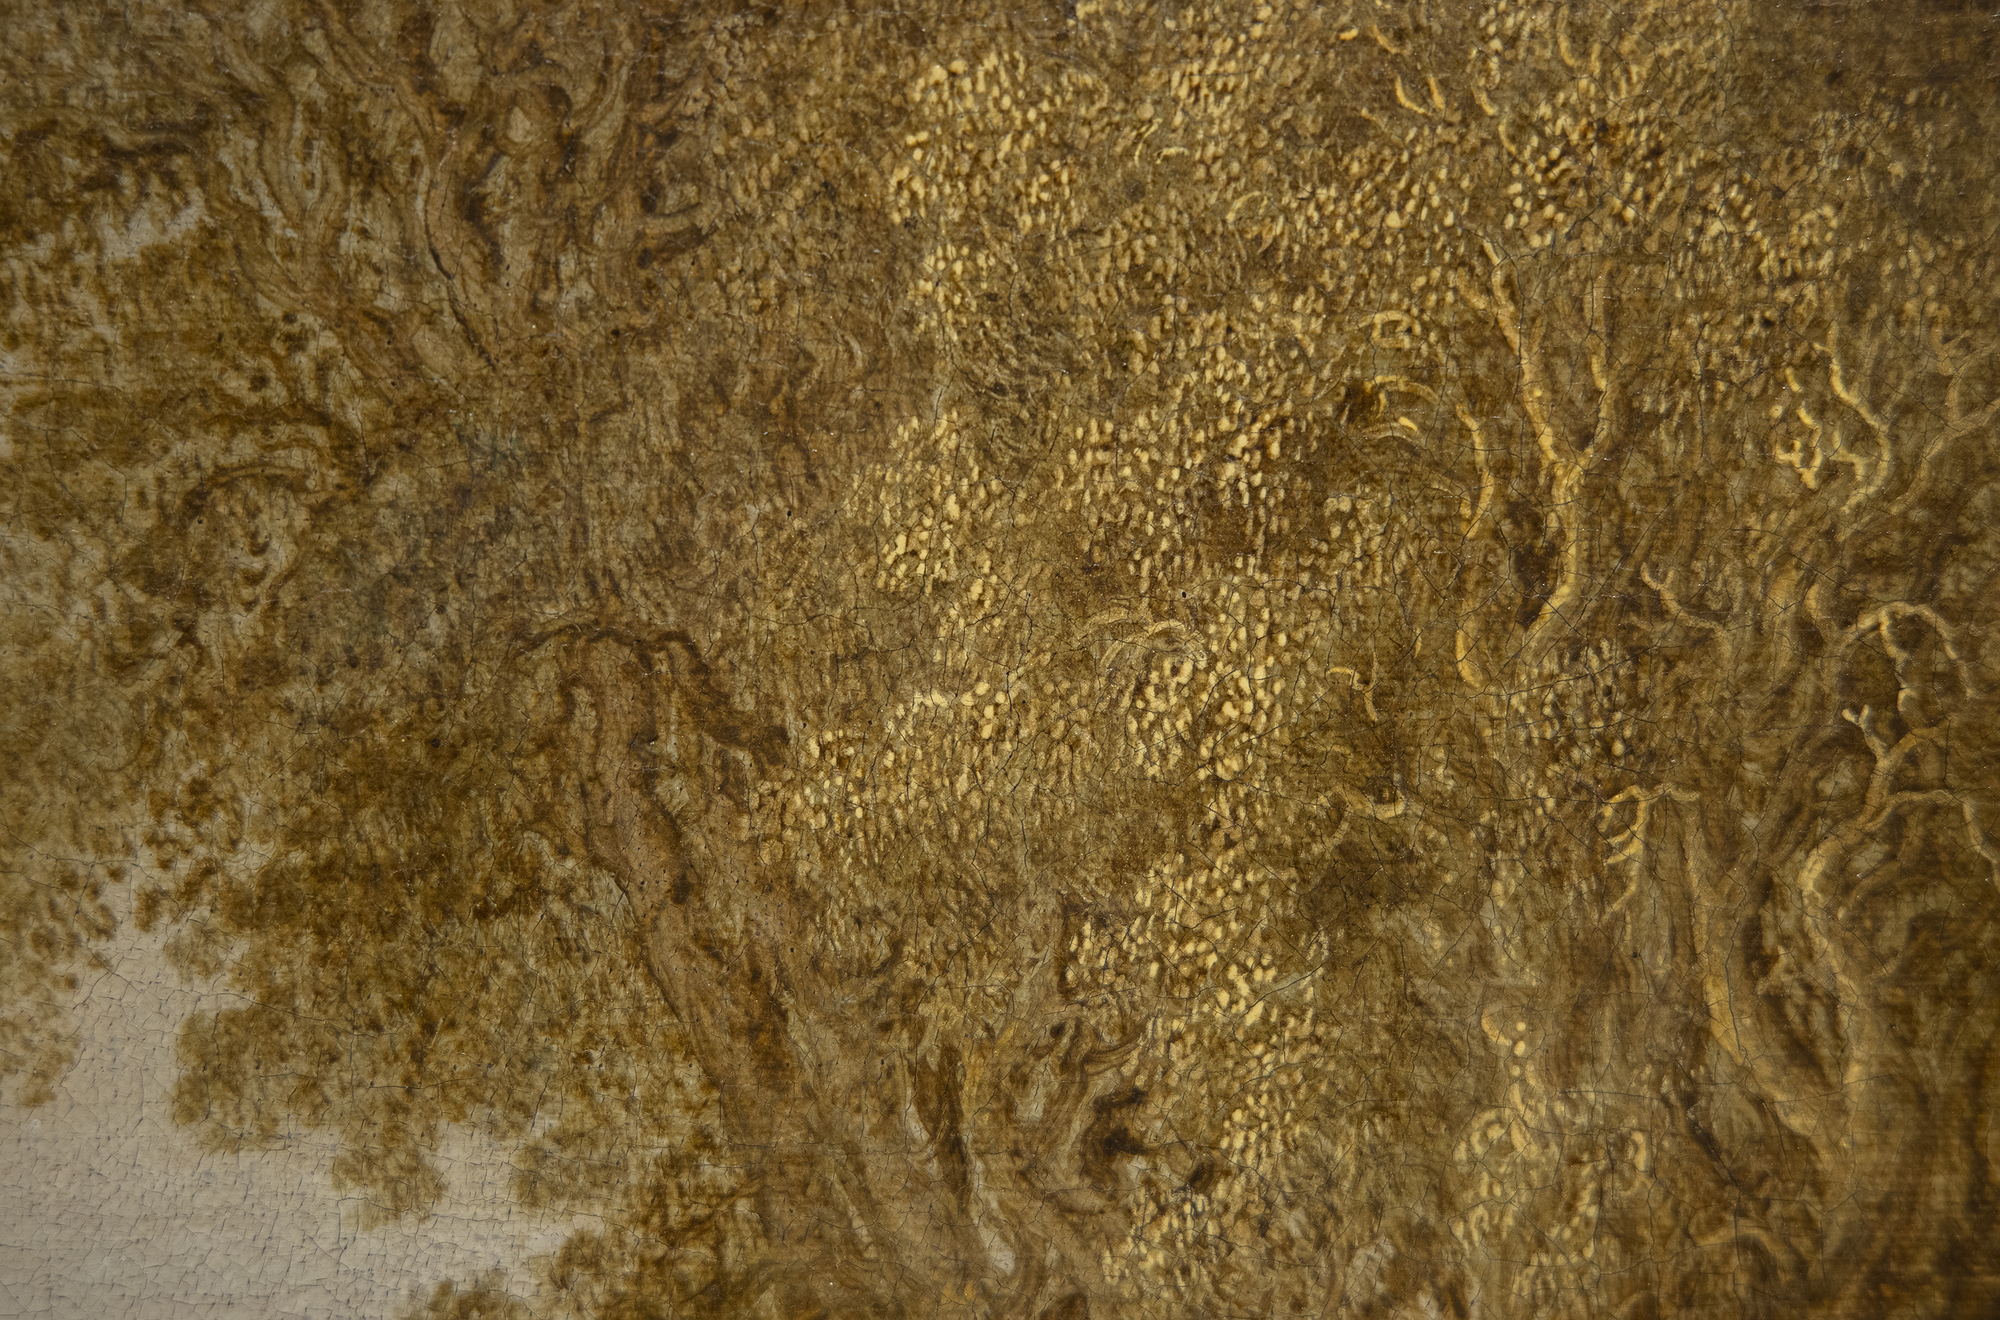 سالومون فان RUYSDAEL - المناظر الطبيعية الكثبان الرملية مع شخصيات يستريح وزوجين على ظهور الخيل، وجهة نظر من كاتدرائية نيميغن وراء - النفط على قماش - 26 1/2 × 41 1/2 في.